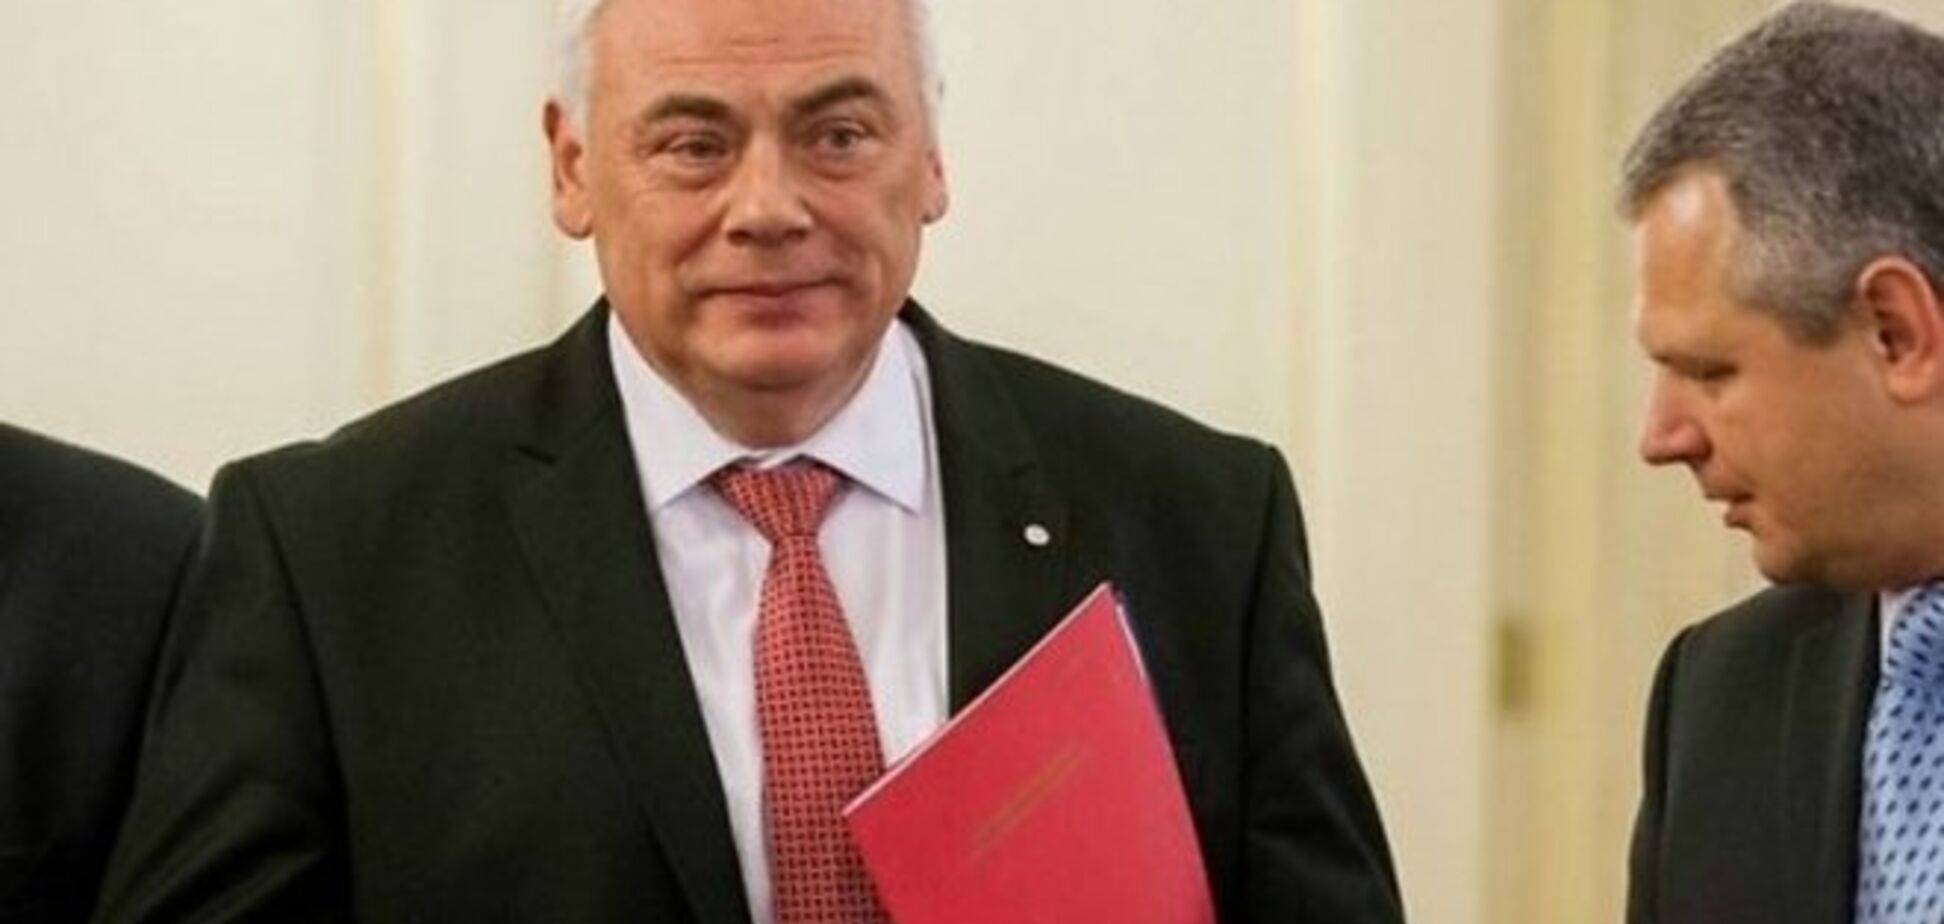 СМИ: глава МВД Латвии подал в отставку из-за коррупционного скандала